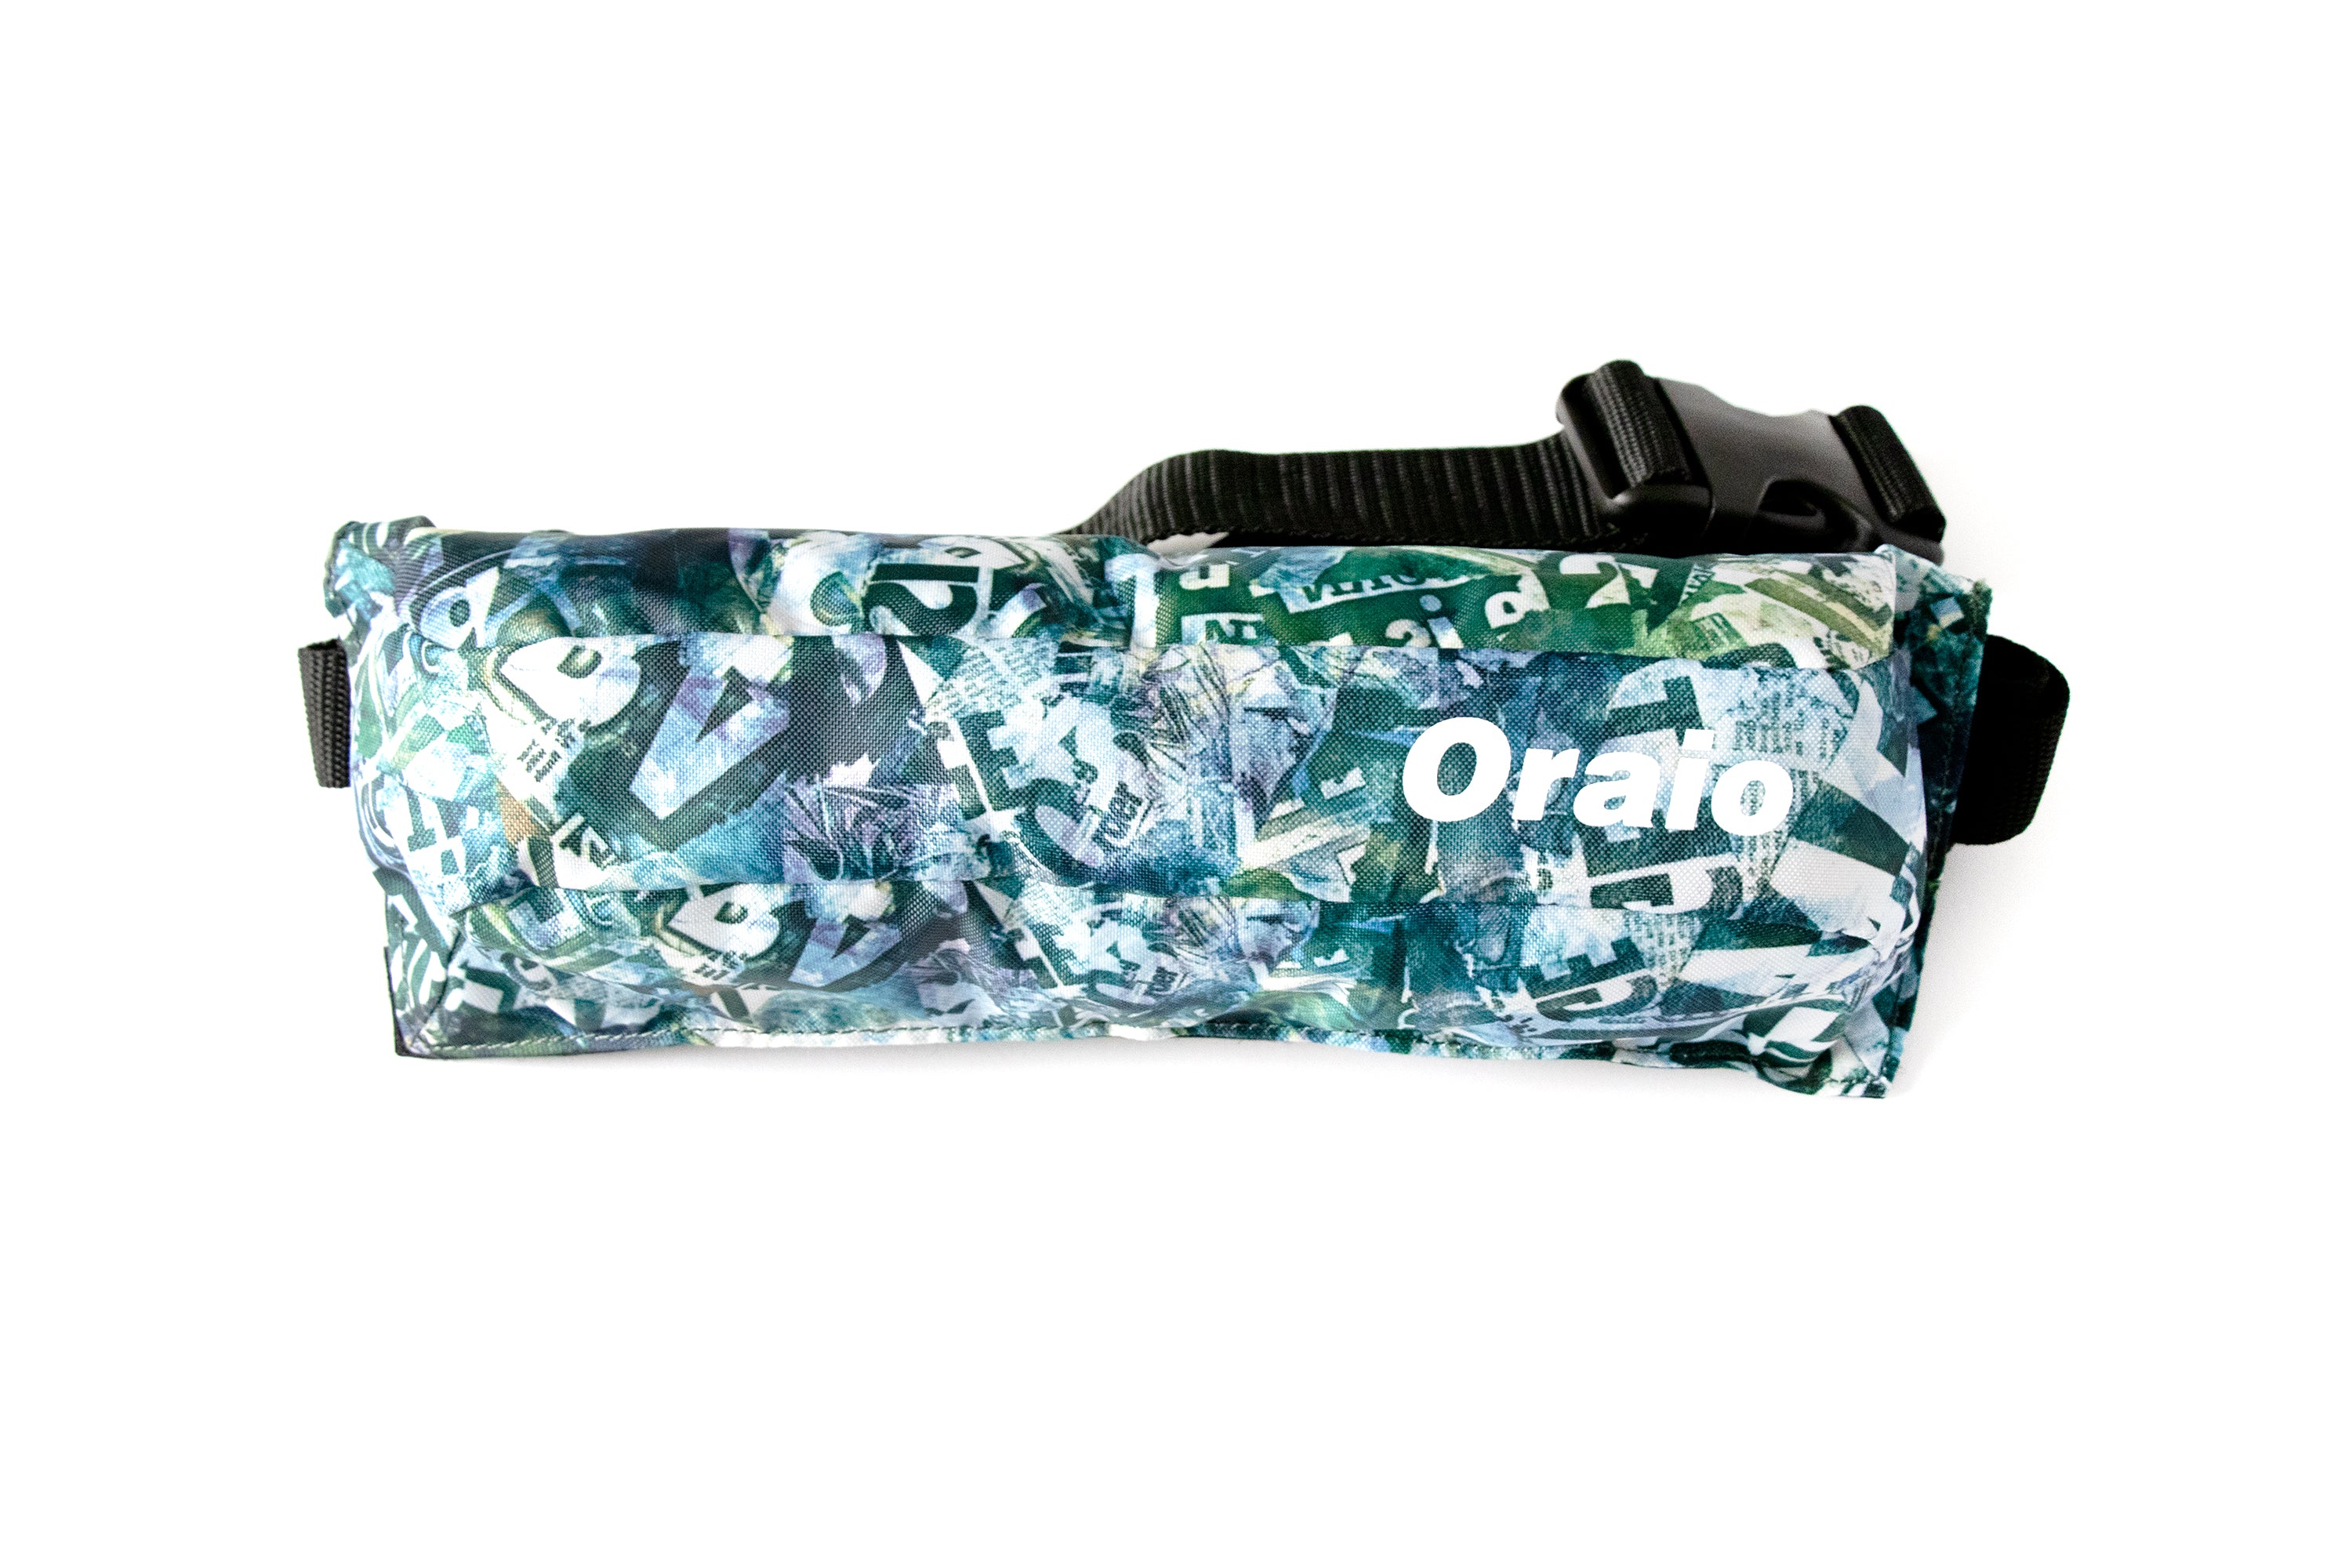 自動膨張式ライフジャケット(ウエストタイプ） – Oraio(オライオ 